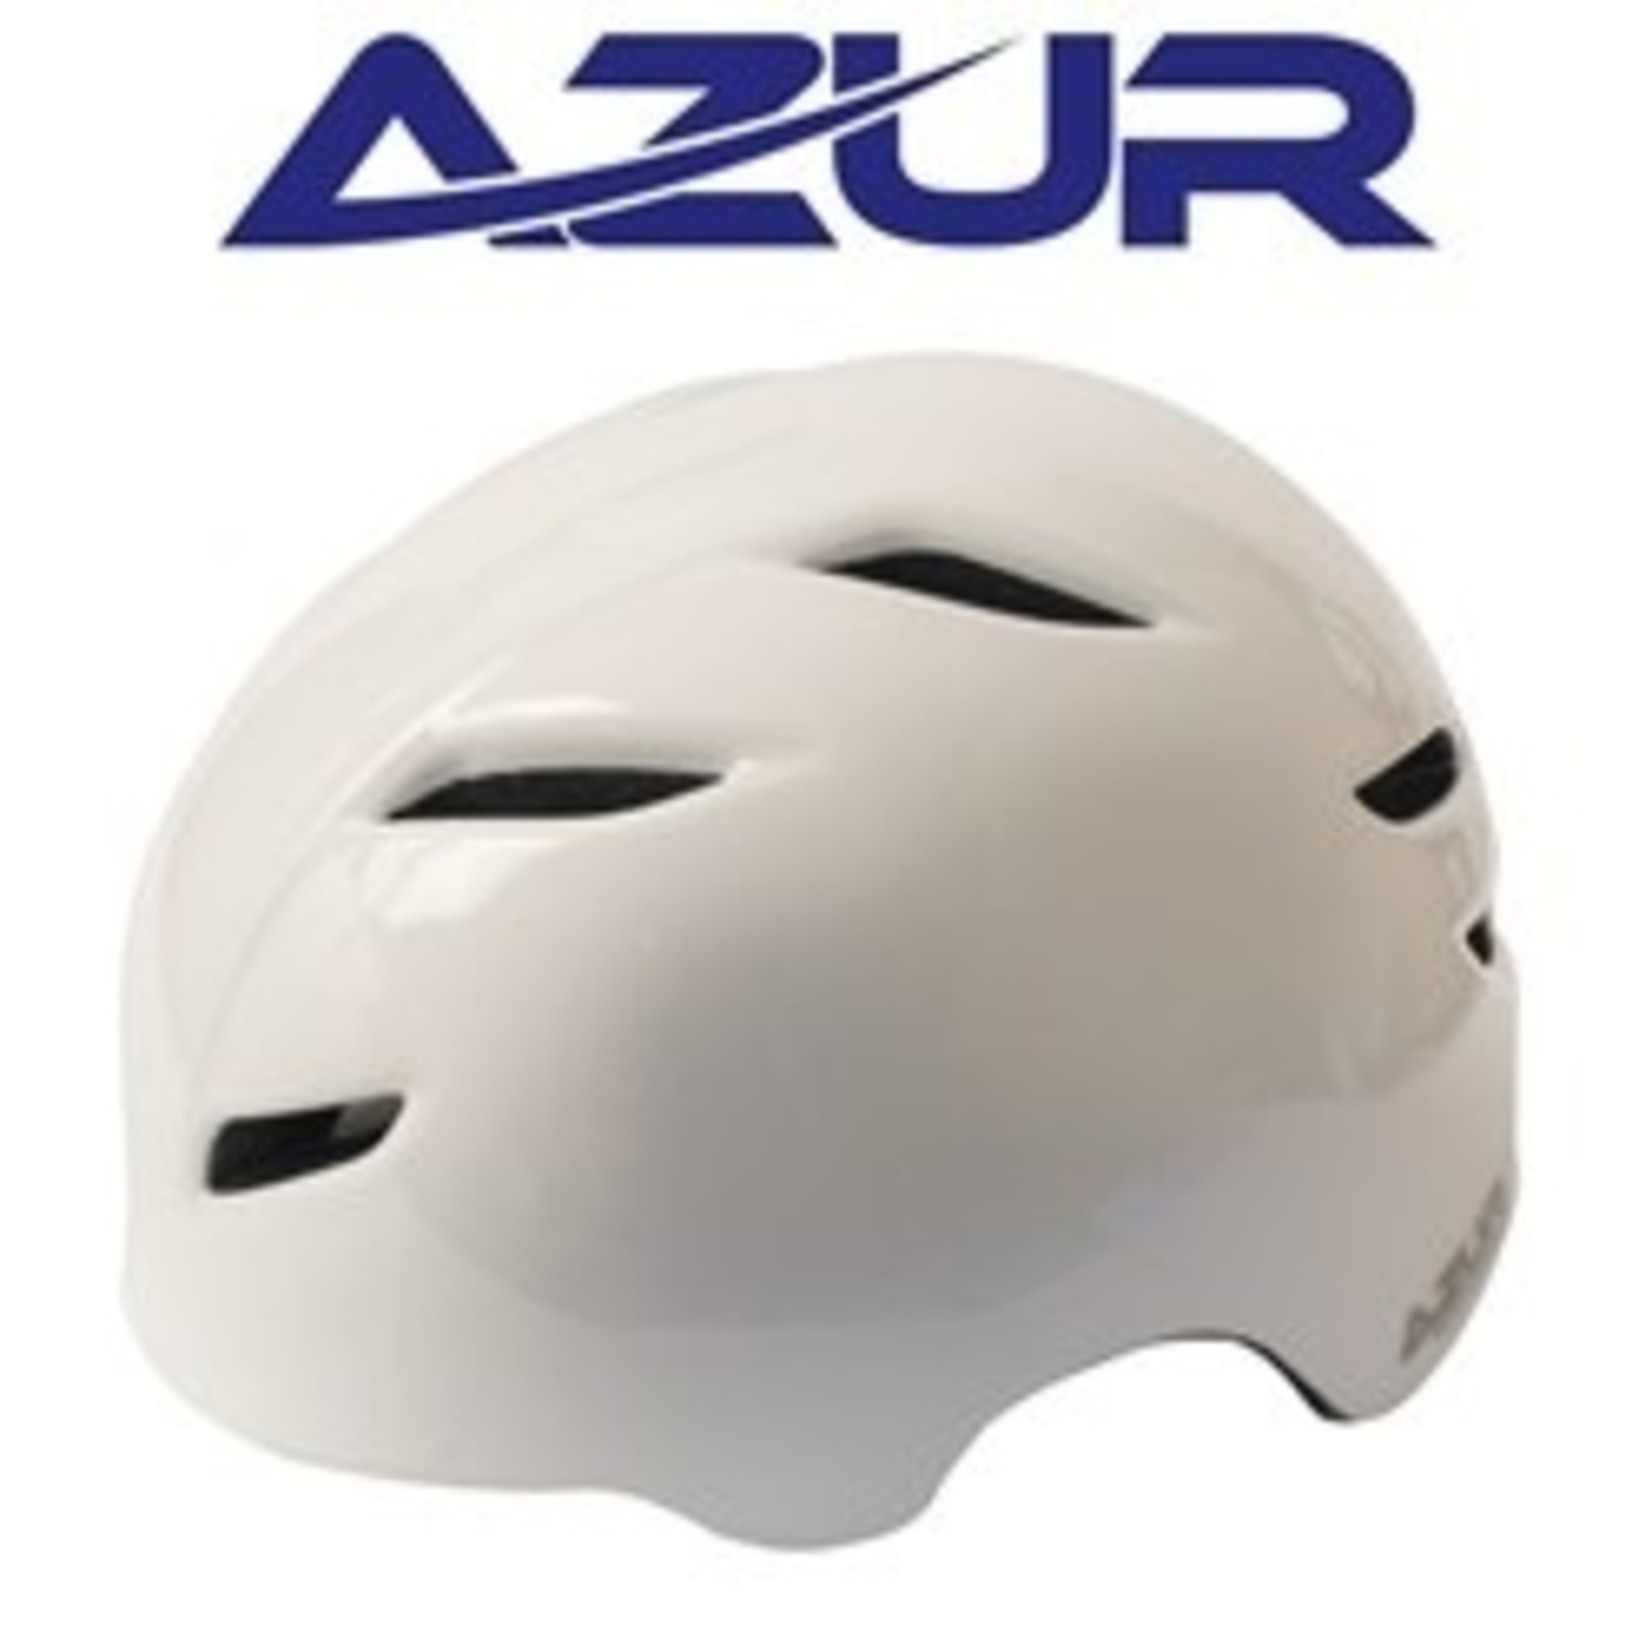 Azur Azur Bike Helmet - U91 Series - Gloss White -Dial Lock Fit System